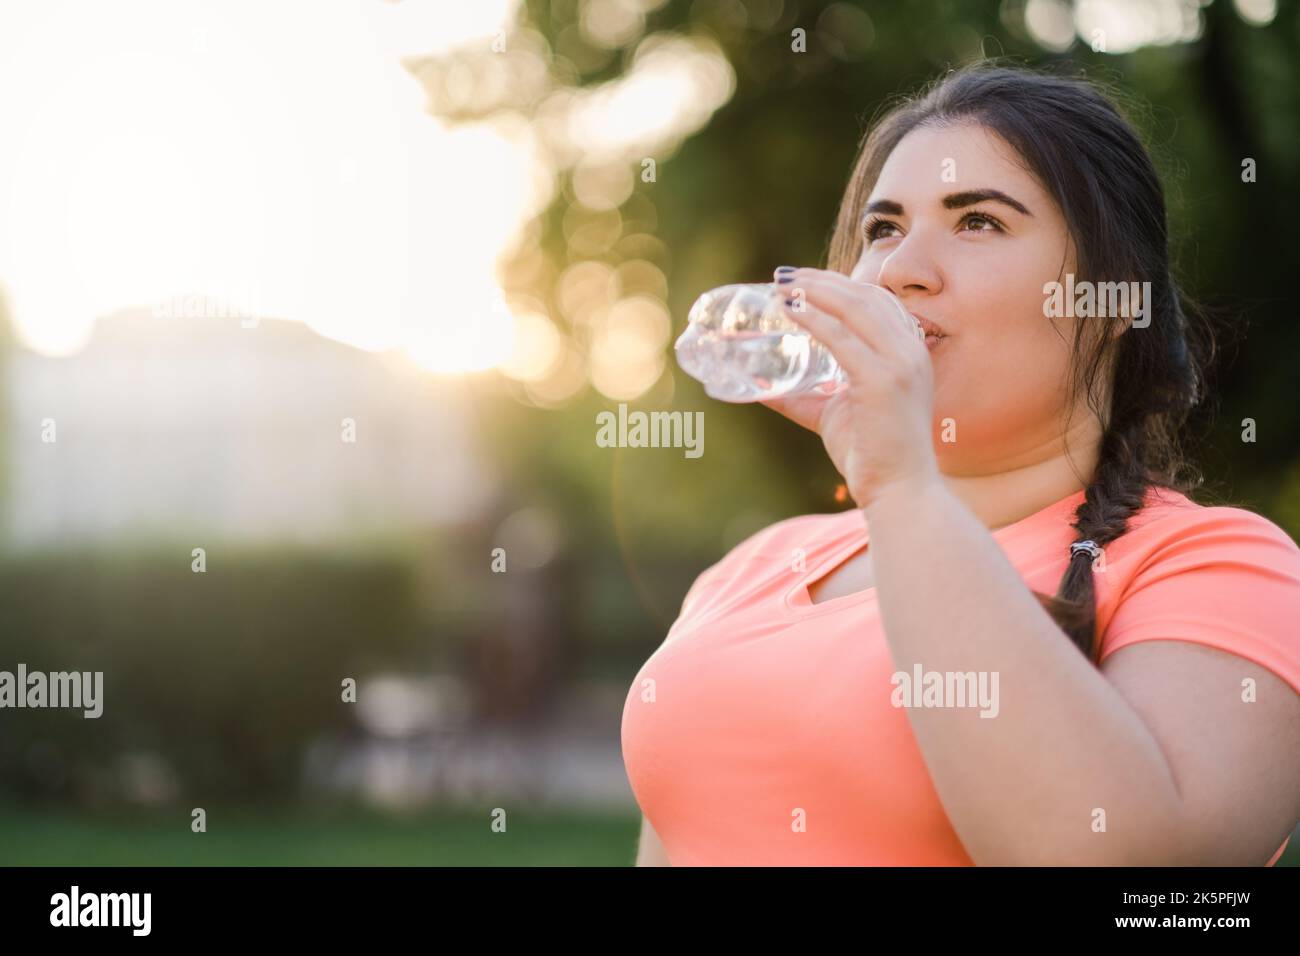 acqua freschezza recupero di energia donna bere Foto Stock